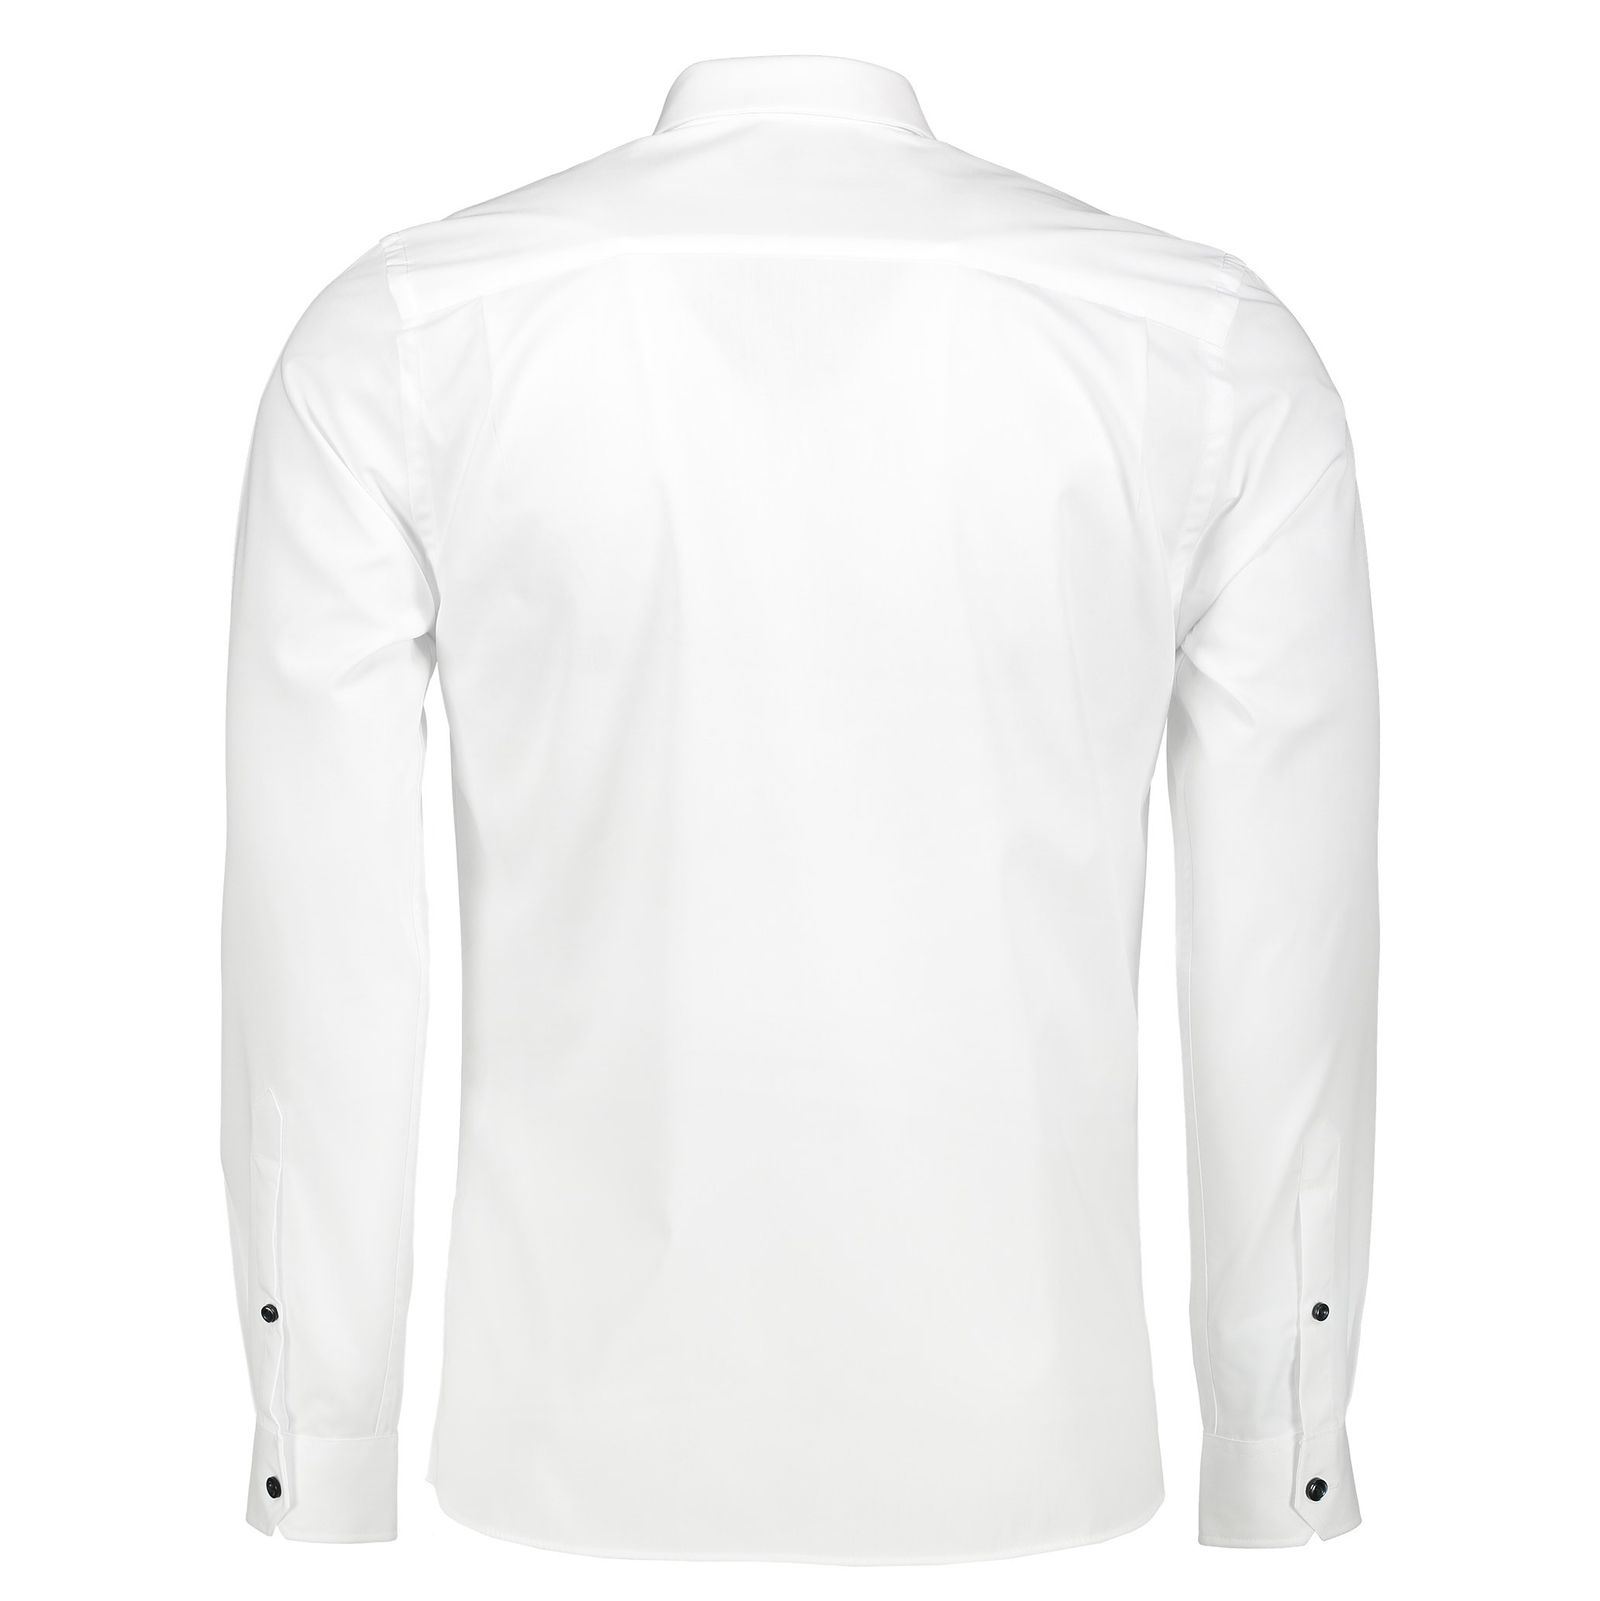 پیراهن رسمی مردانه - رد هرینگ - سفيد - 8